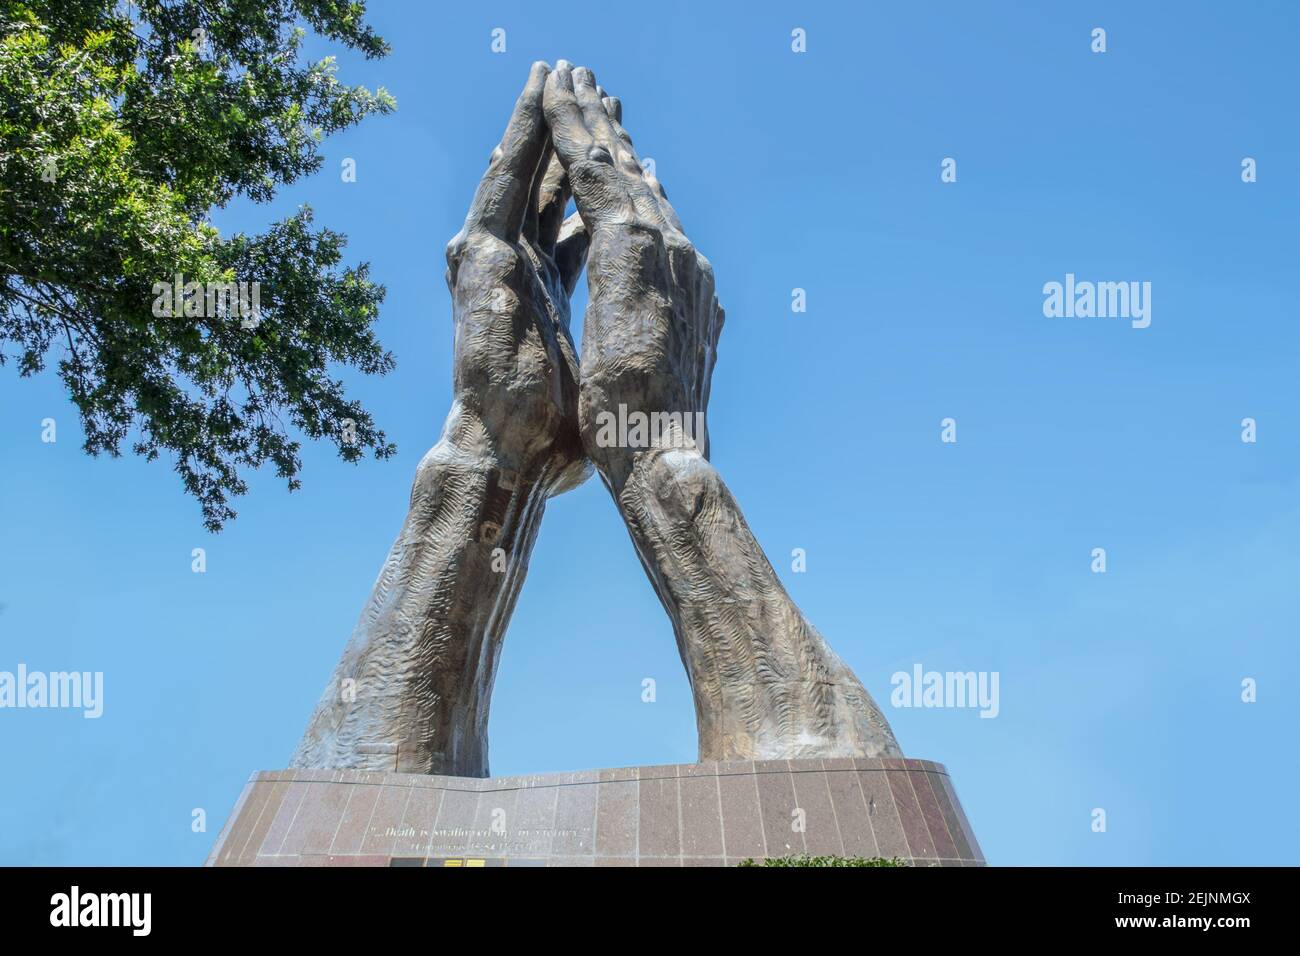 06-11-2020 Tulsa USA - statue de main de prière géante à Oral Roberts University - lit la mort est avalée dans la victoire - contre le ciel bleu avec arbre Banque D'Images